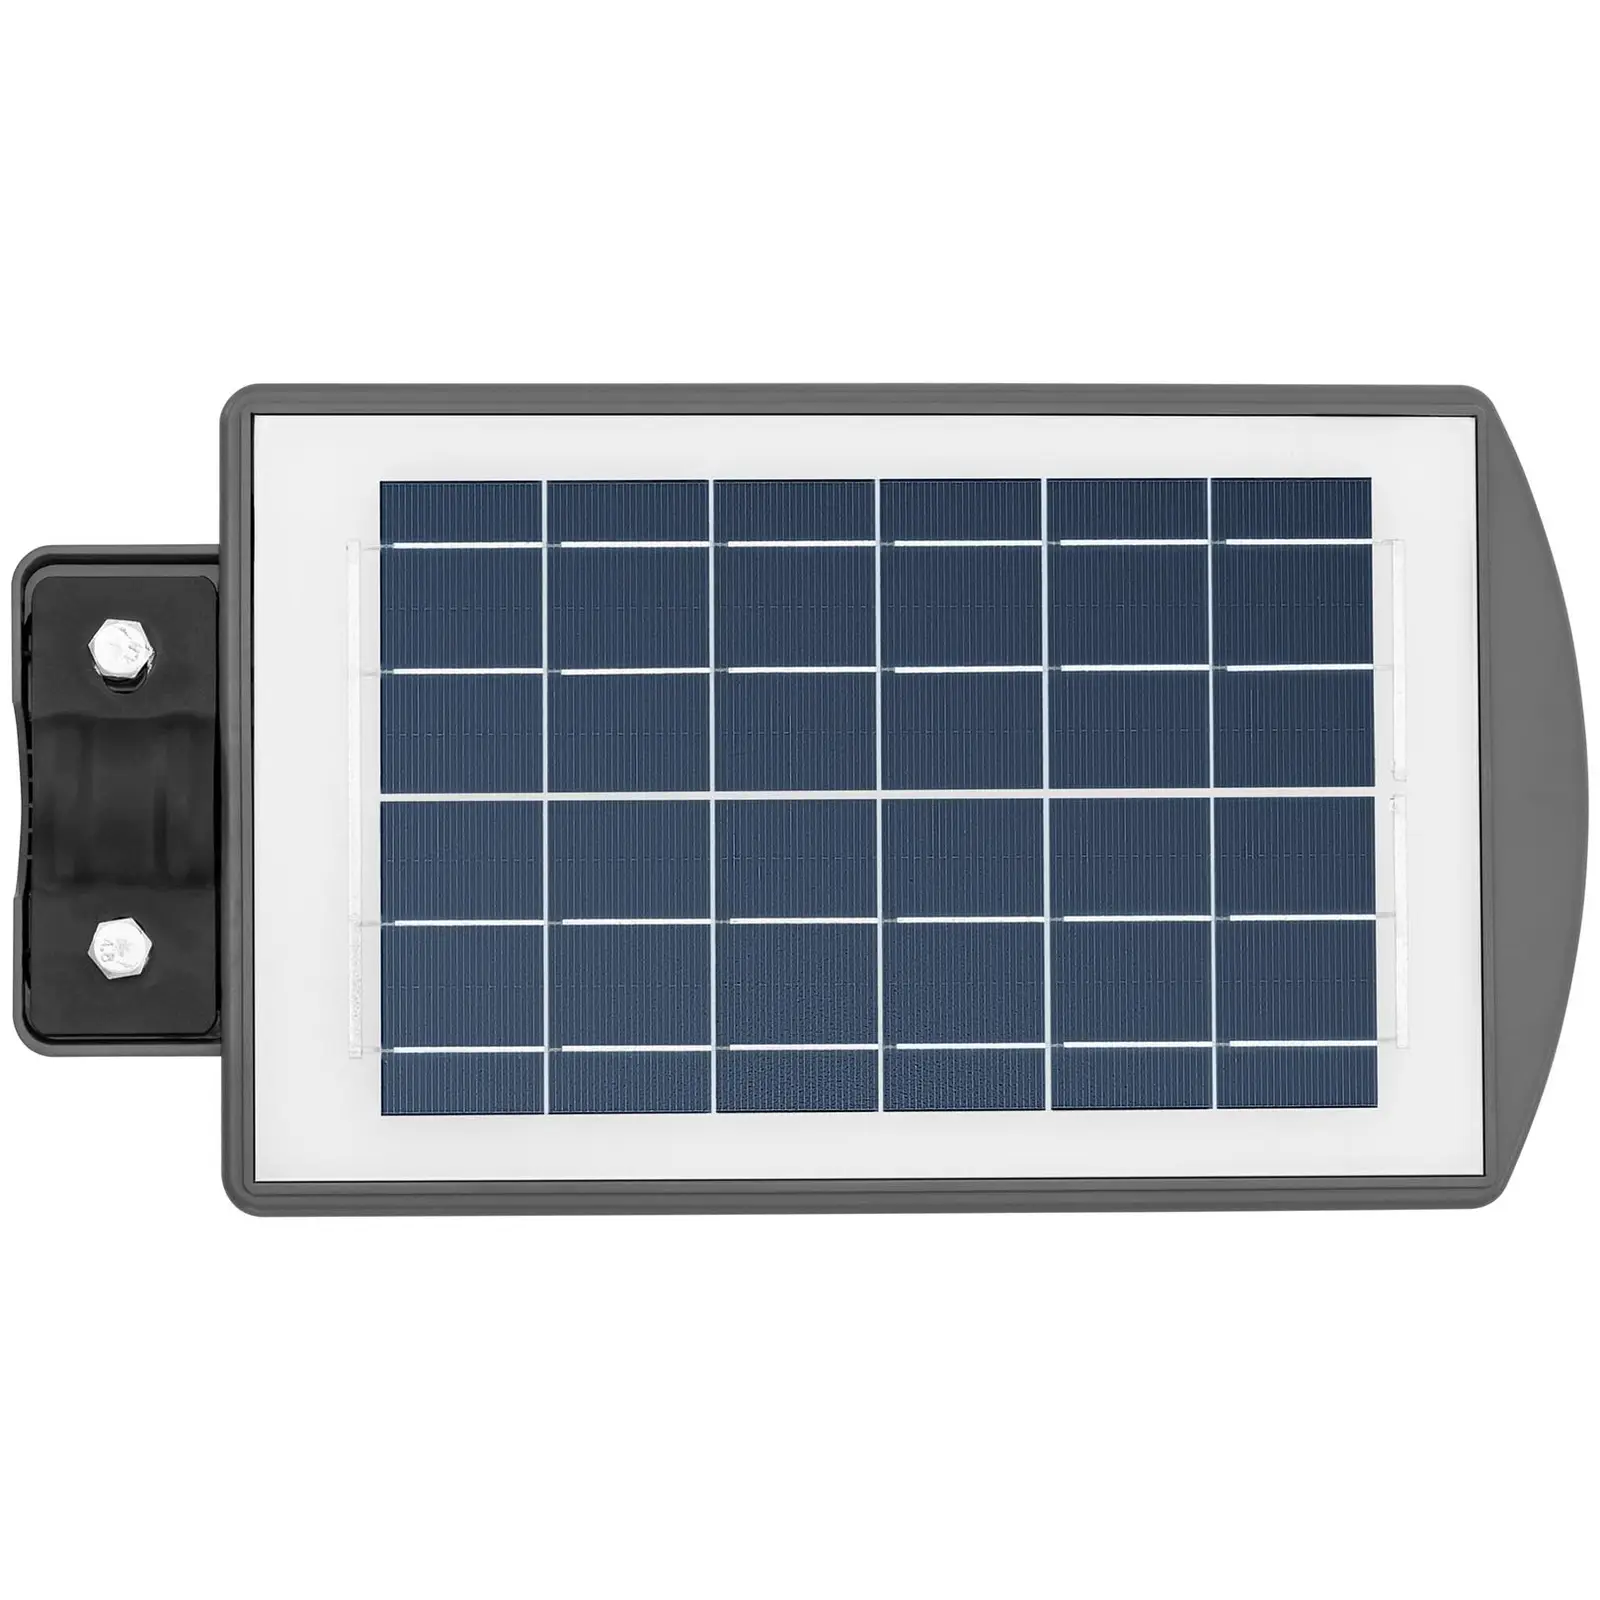 Solar-Außenleuchte - Bewegungssensor - 100 W - 6000 - 6500 K - 14 - 16 h - IP54